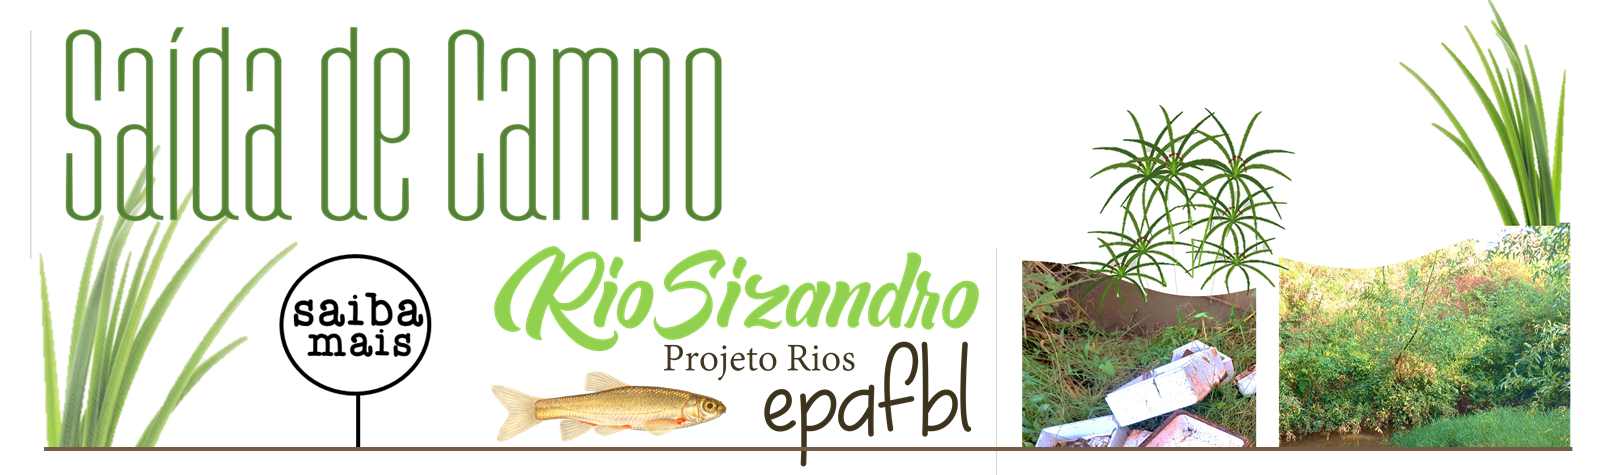  Projeto Rios - Saída de Campo